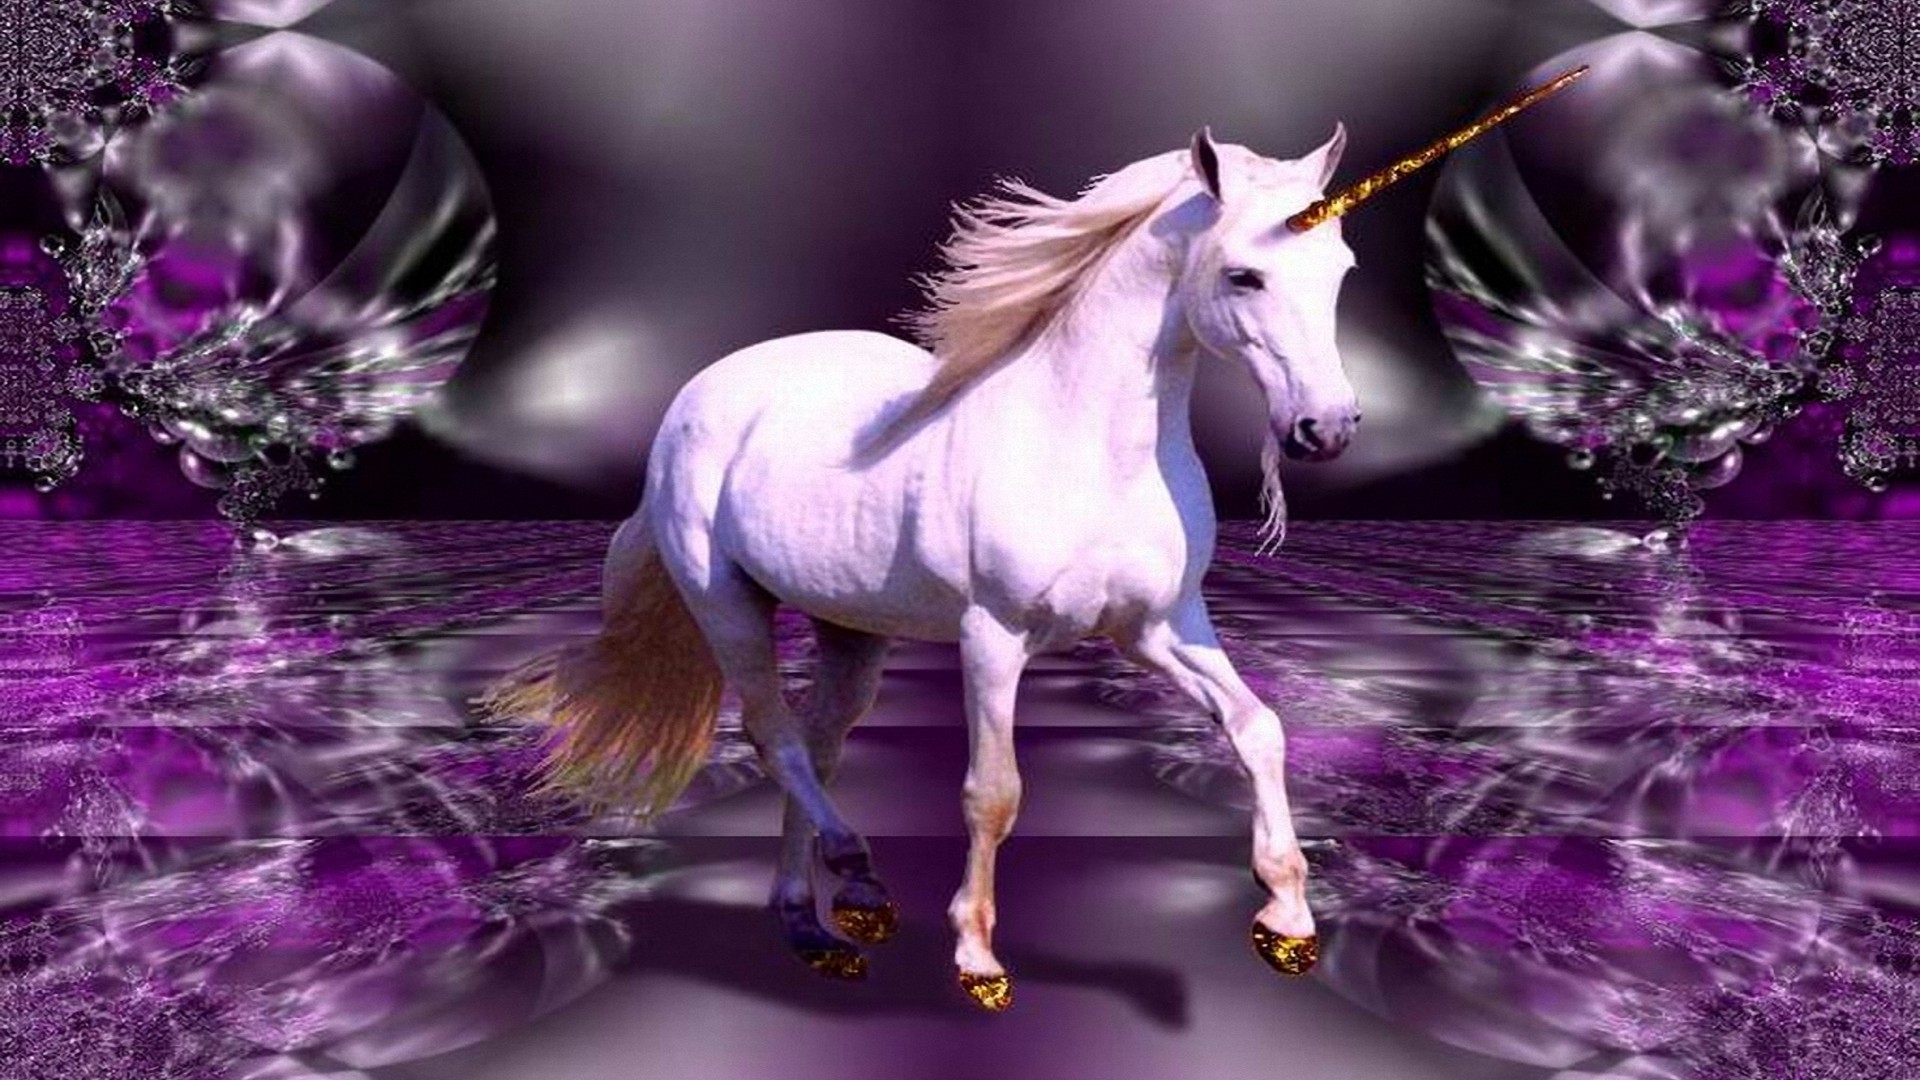 unicorno wallpaper hd,unicorno,personaggio fittizio,creatura mitica,viola,lavanda